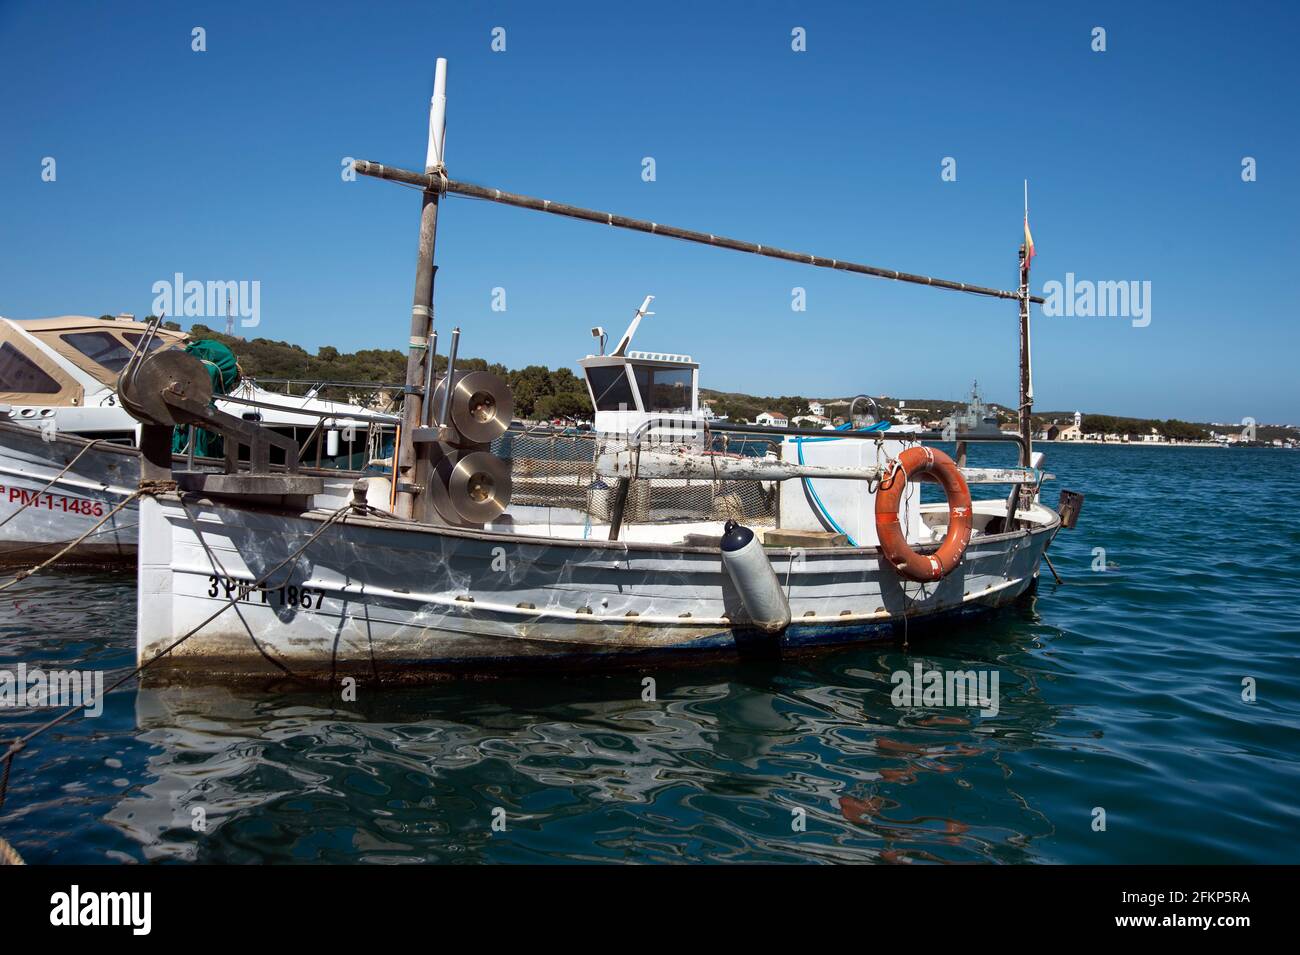 barcos de pesca tradicionales amarrados en el puerto de mahón en menorca españa Foto de stock